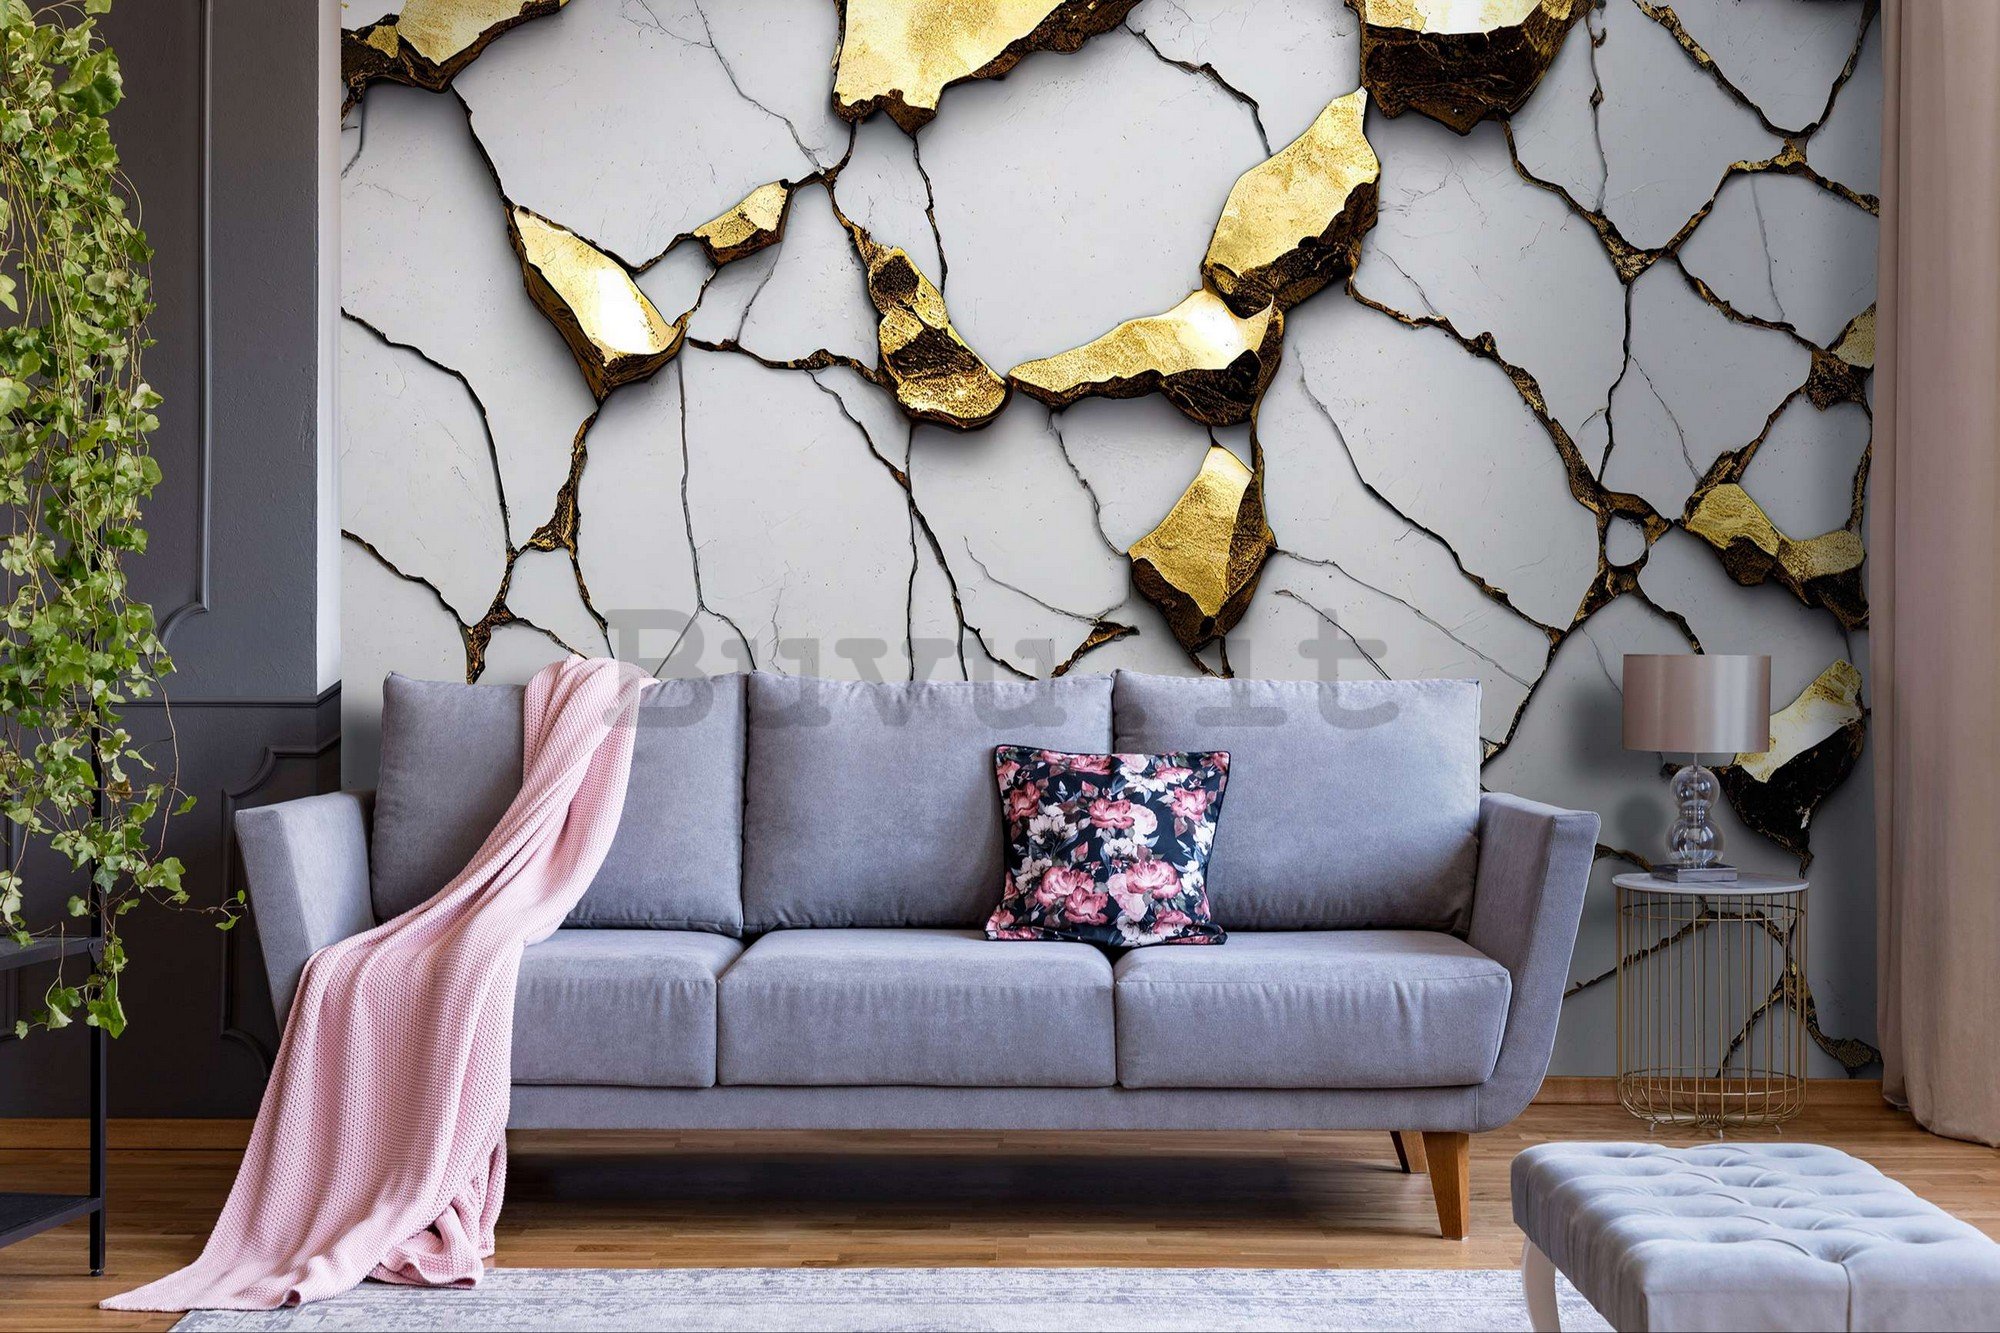 Fotomurale in TNT: Imitazione glamour del marmo dorato con parete bianca - 254x184 cm